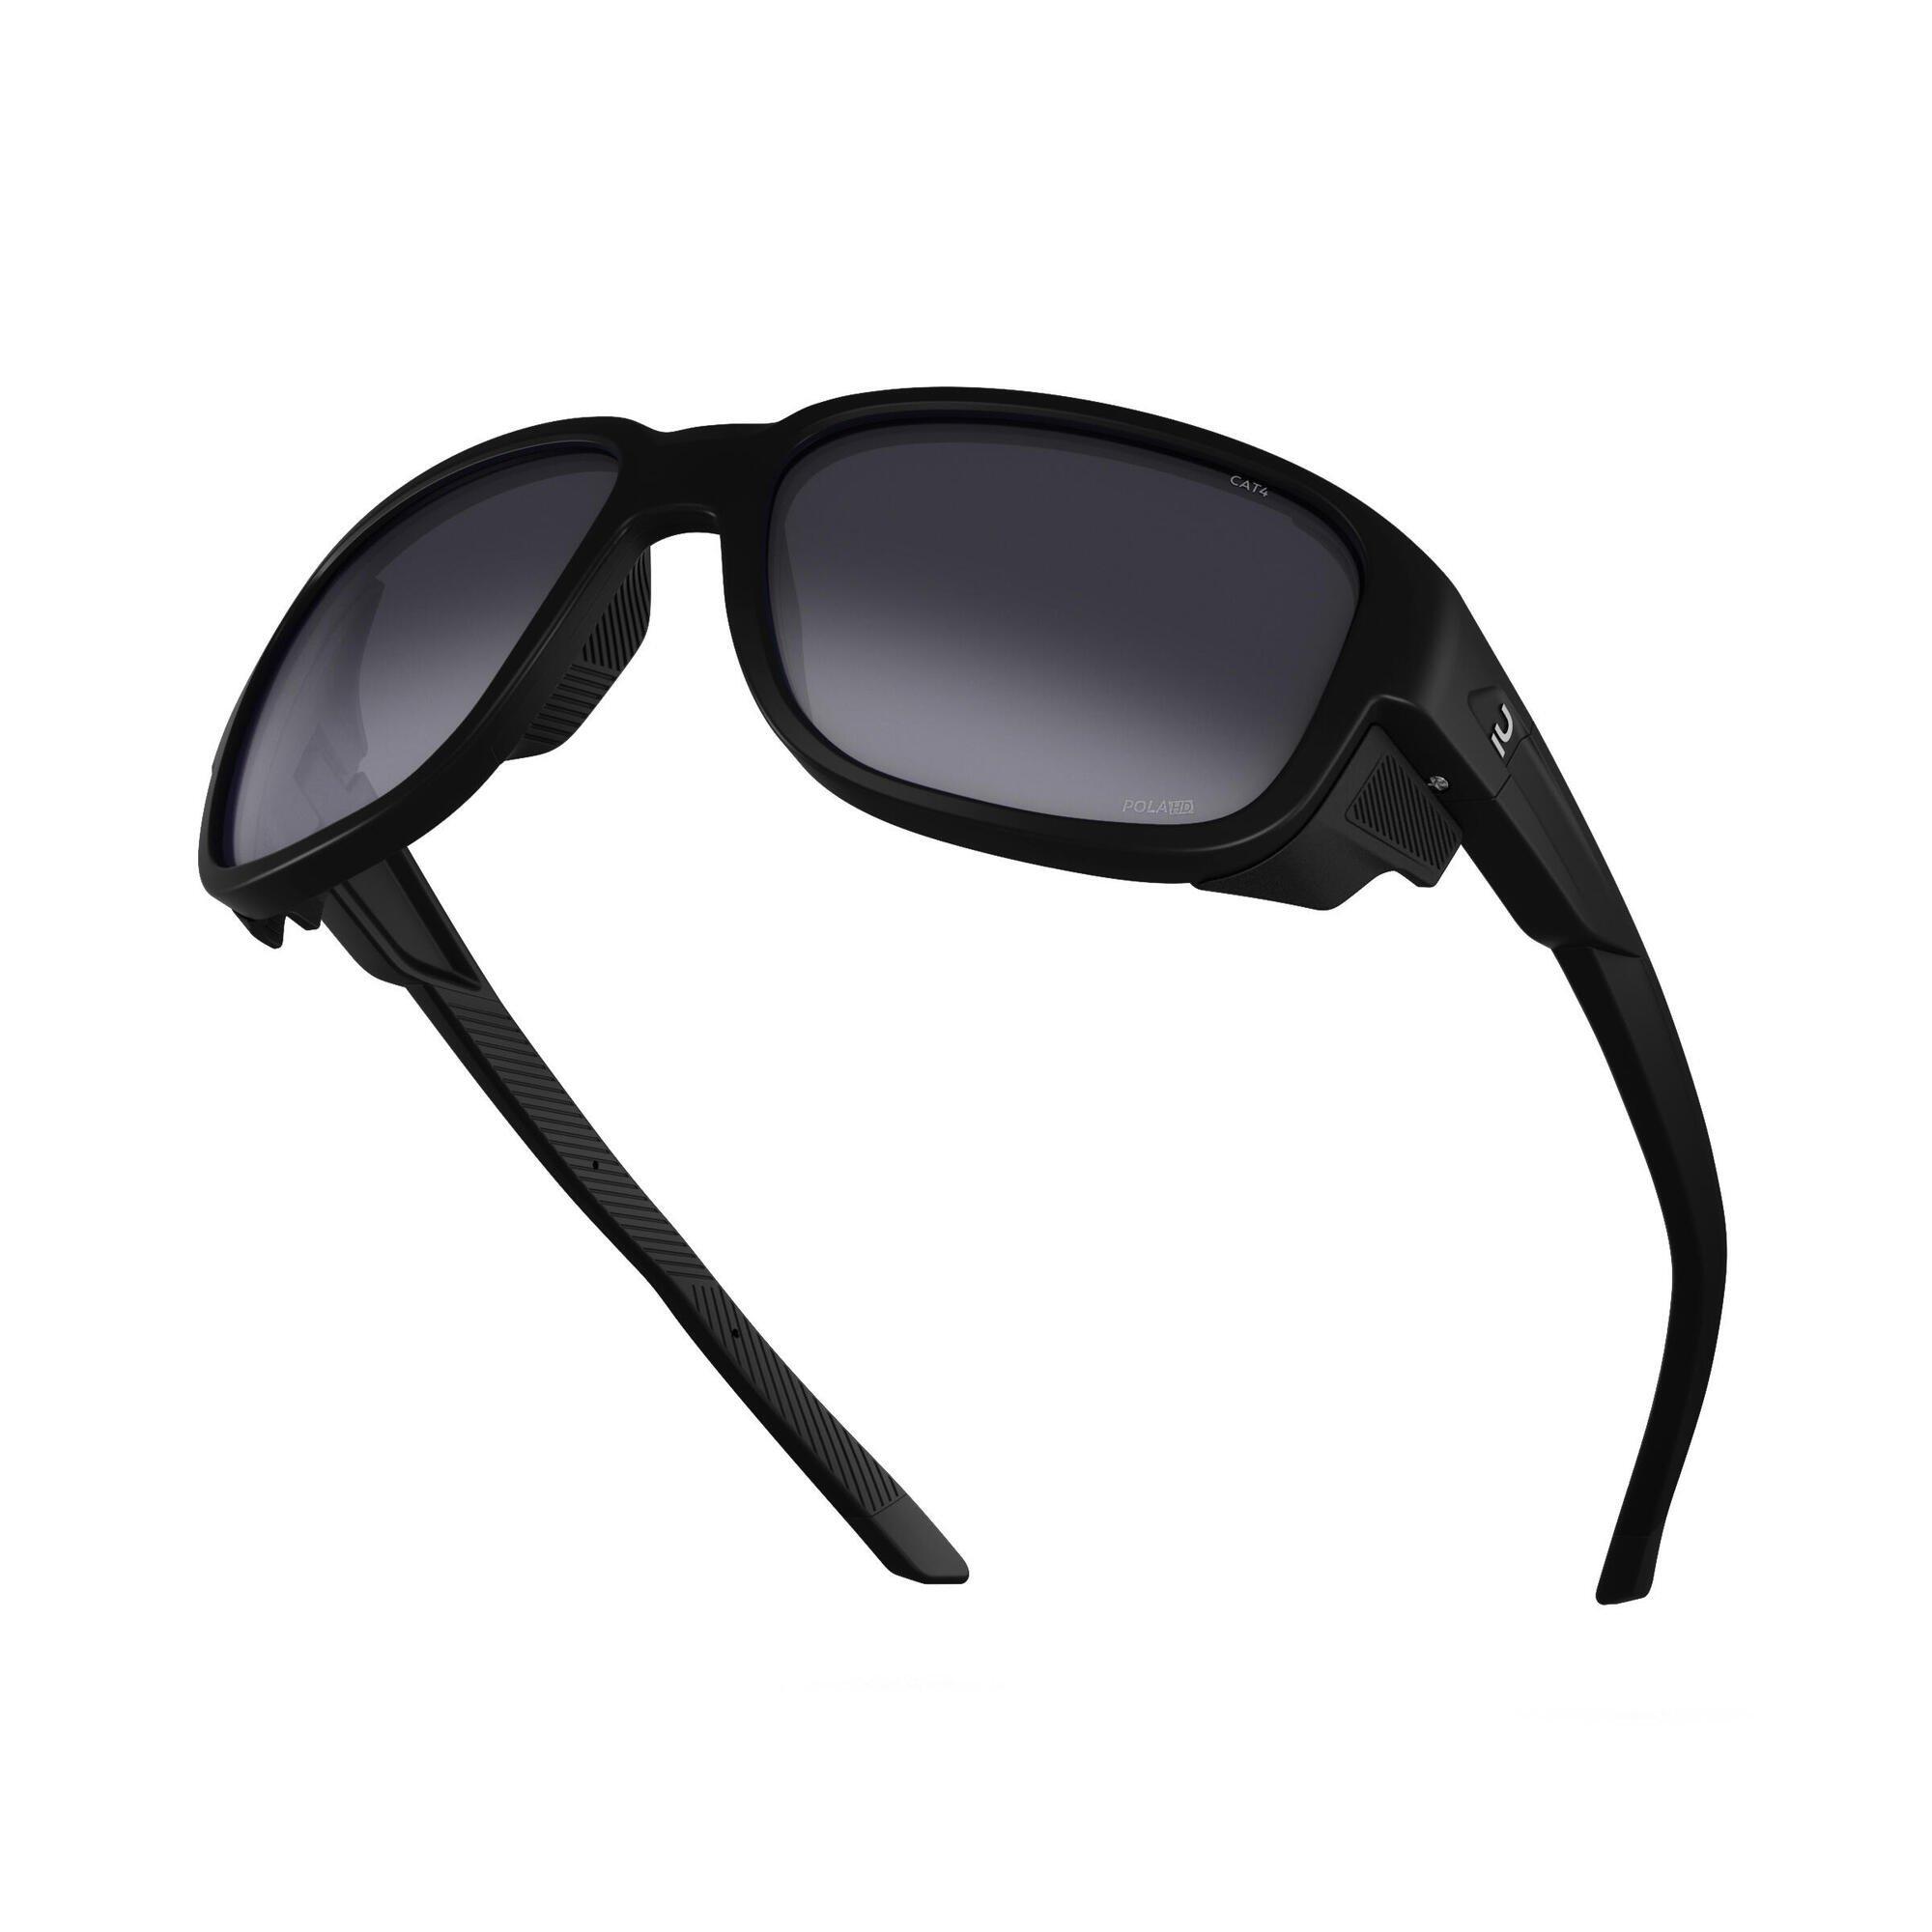 Buy Sunglasses Online|Category 3 UV protection Black|Quechua | Shopper.com